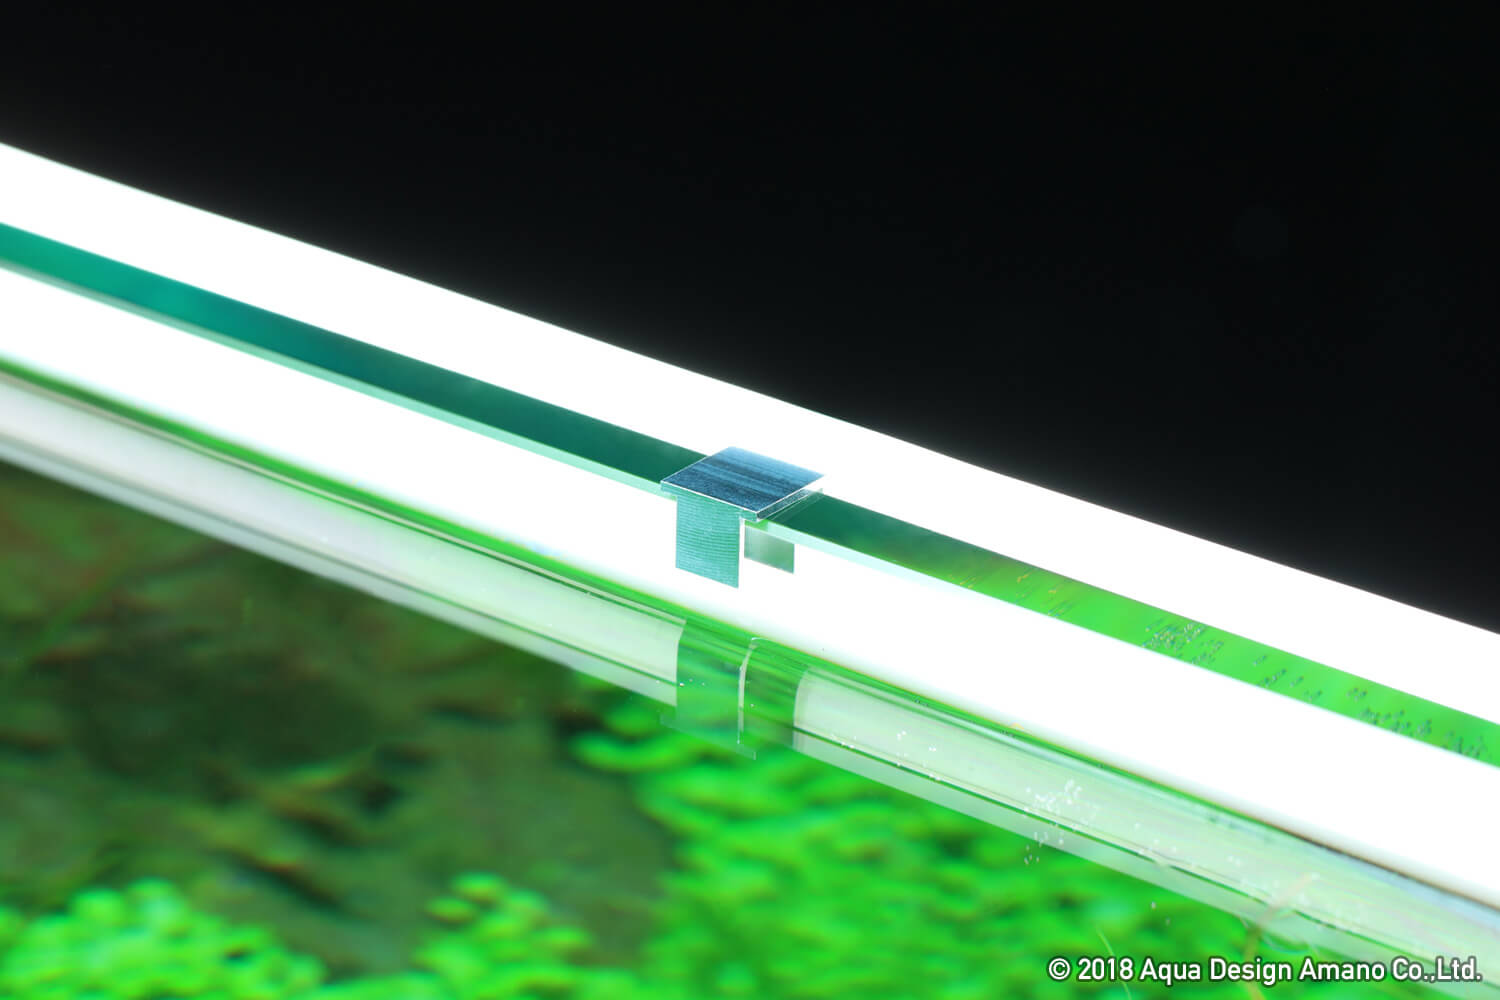 水景はより美しくなる 水槽用ledバックライトの光 Aqua Design Amano